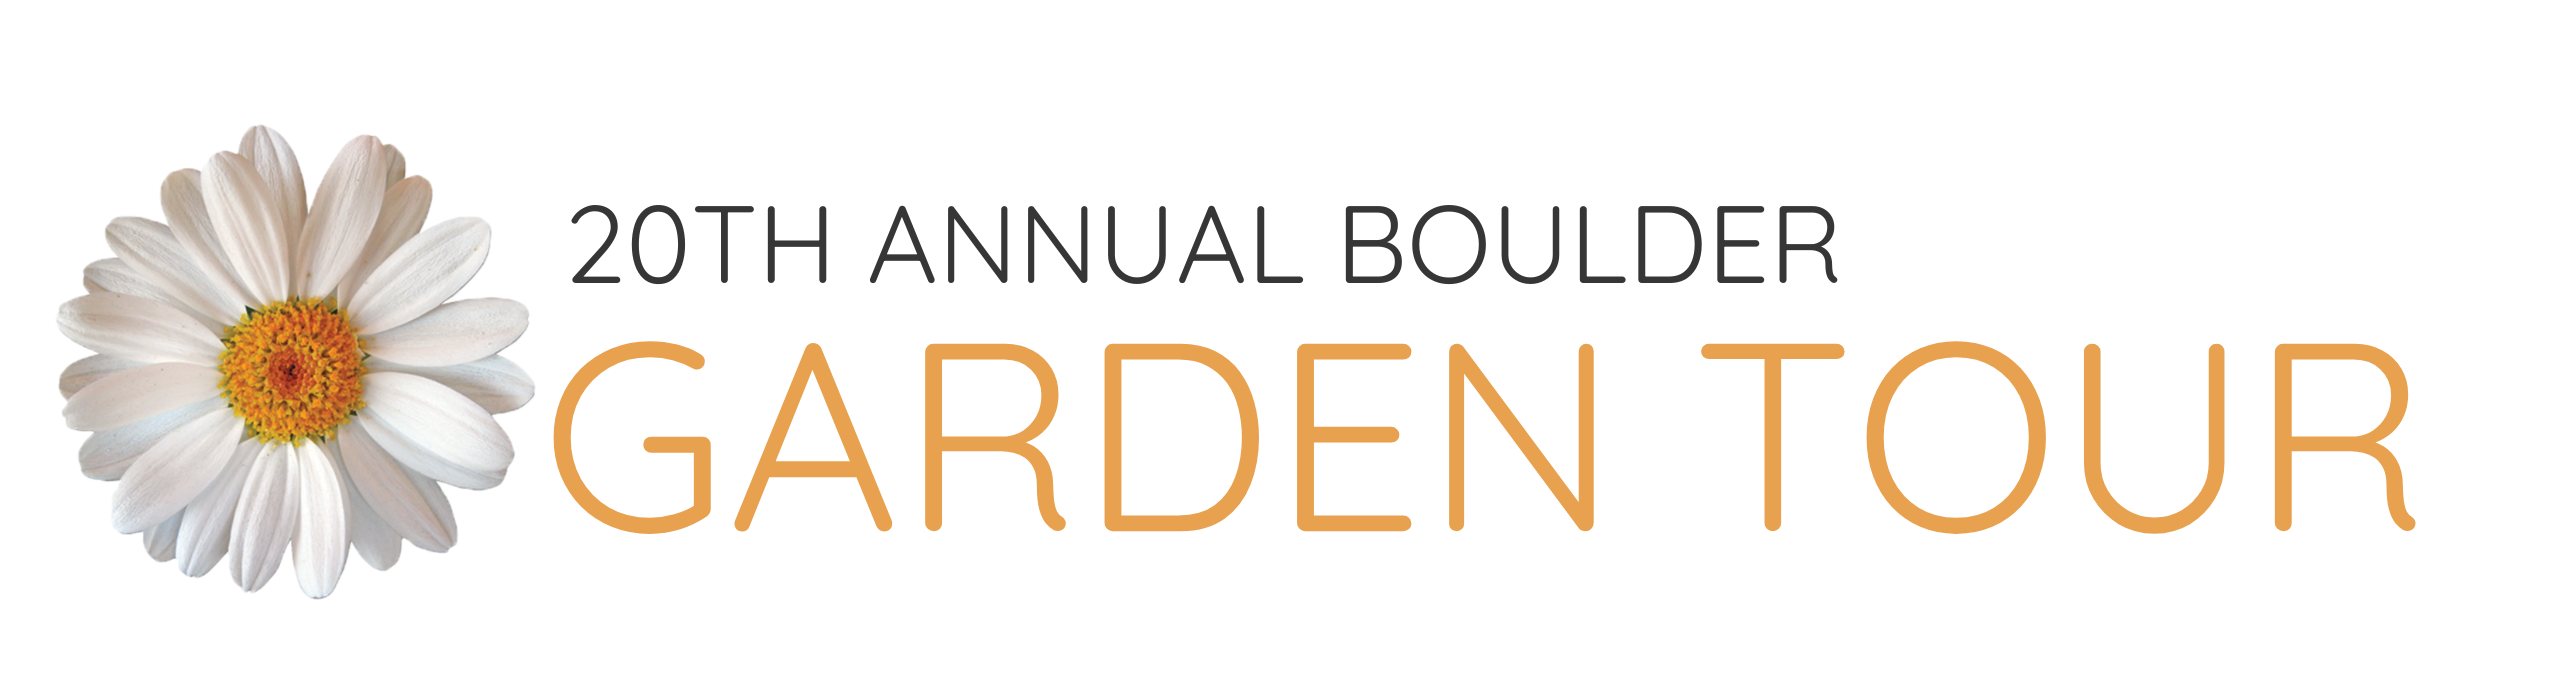 20th Annual Boulder Garden Tour